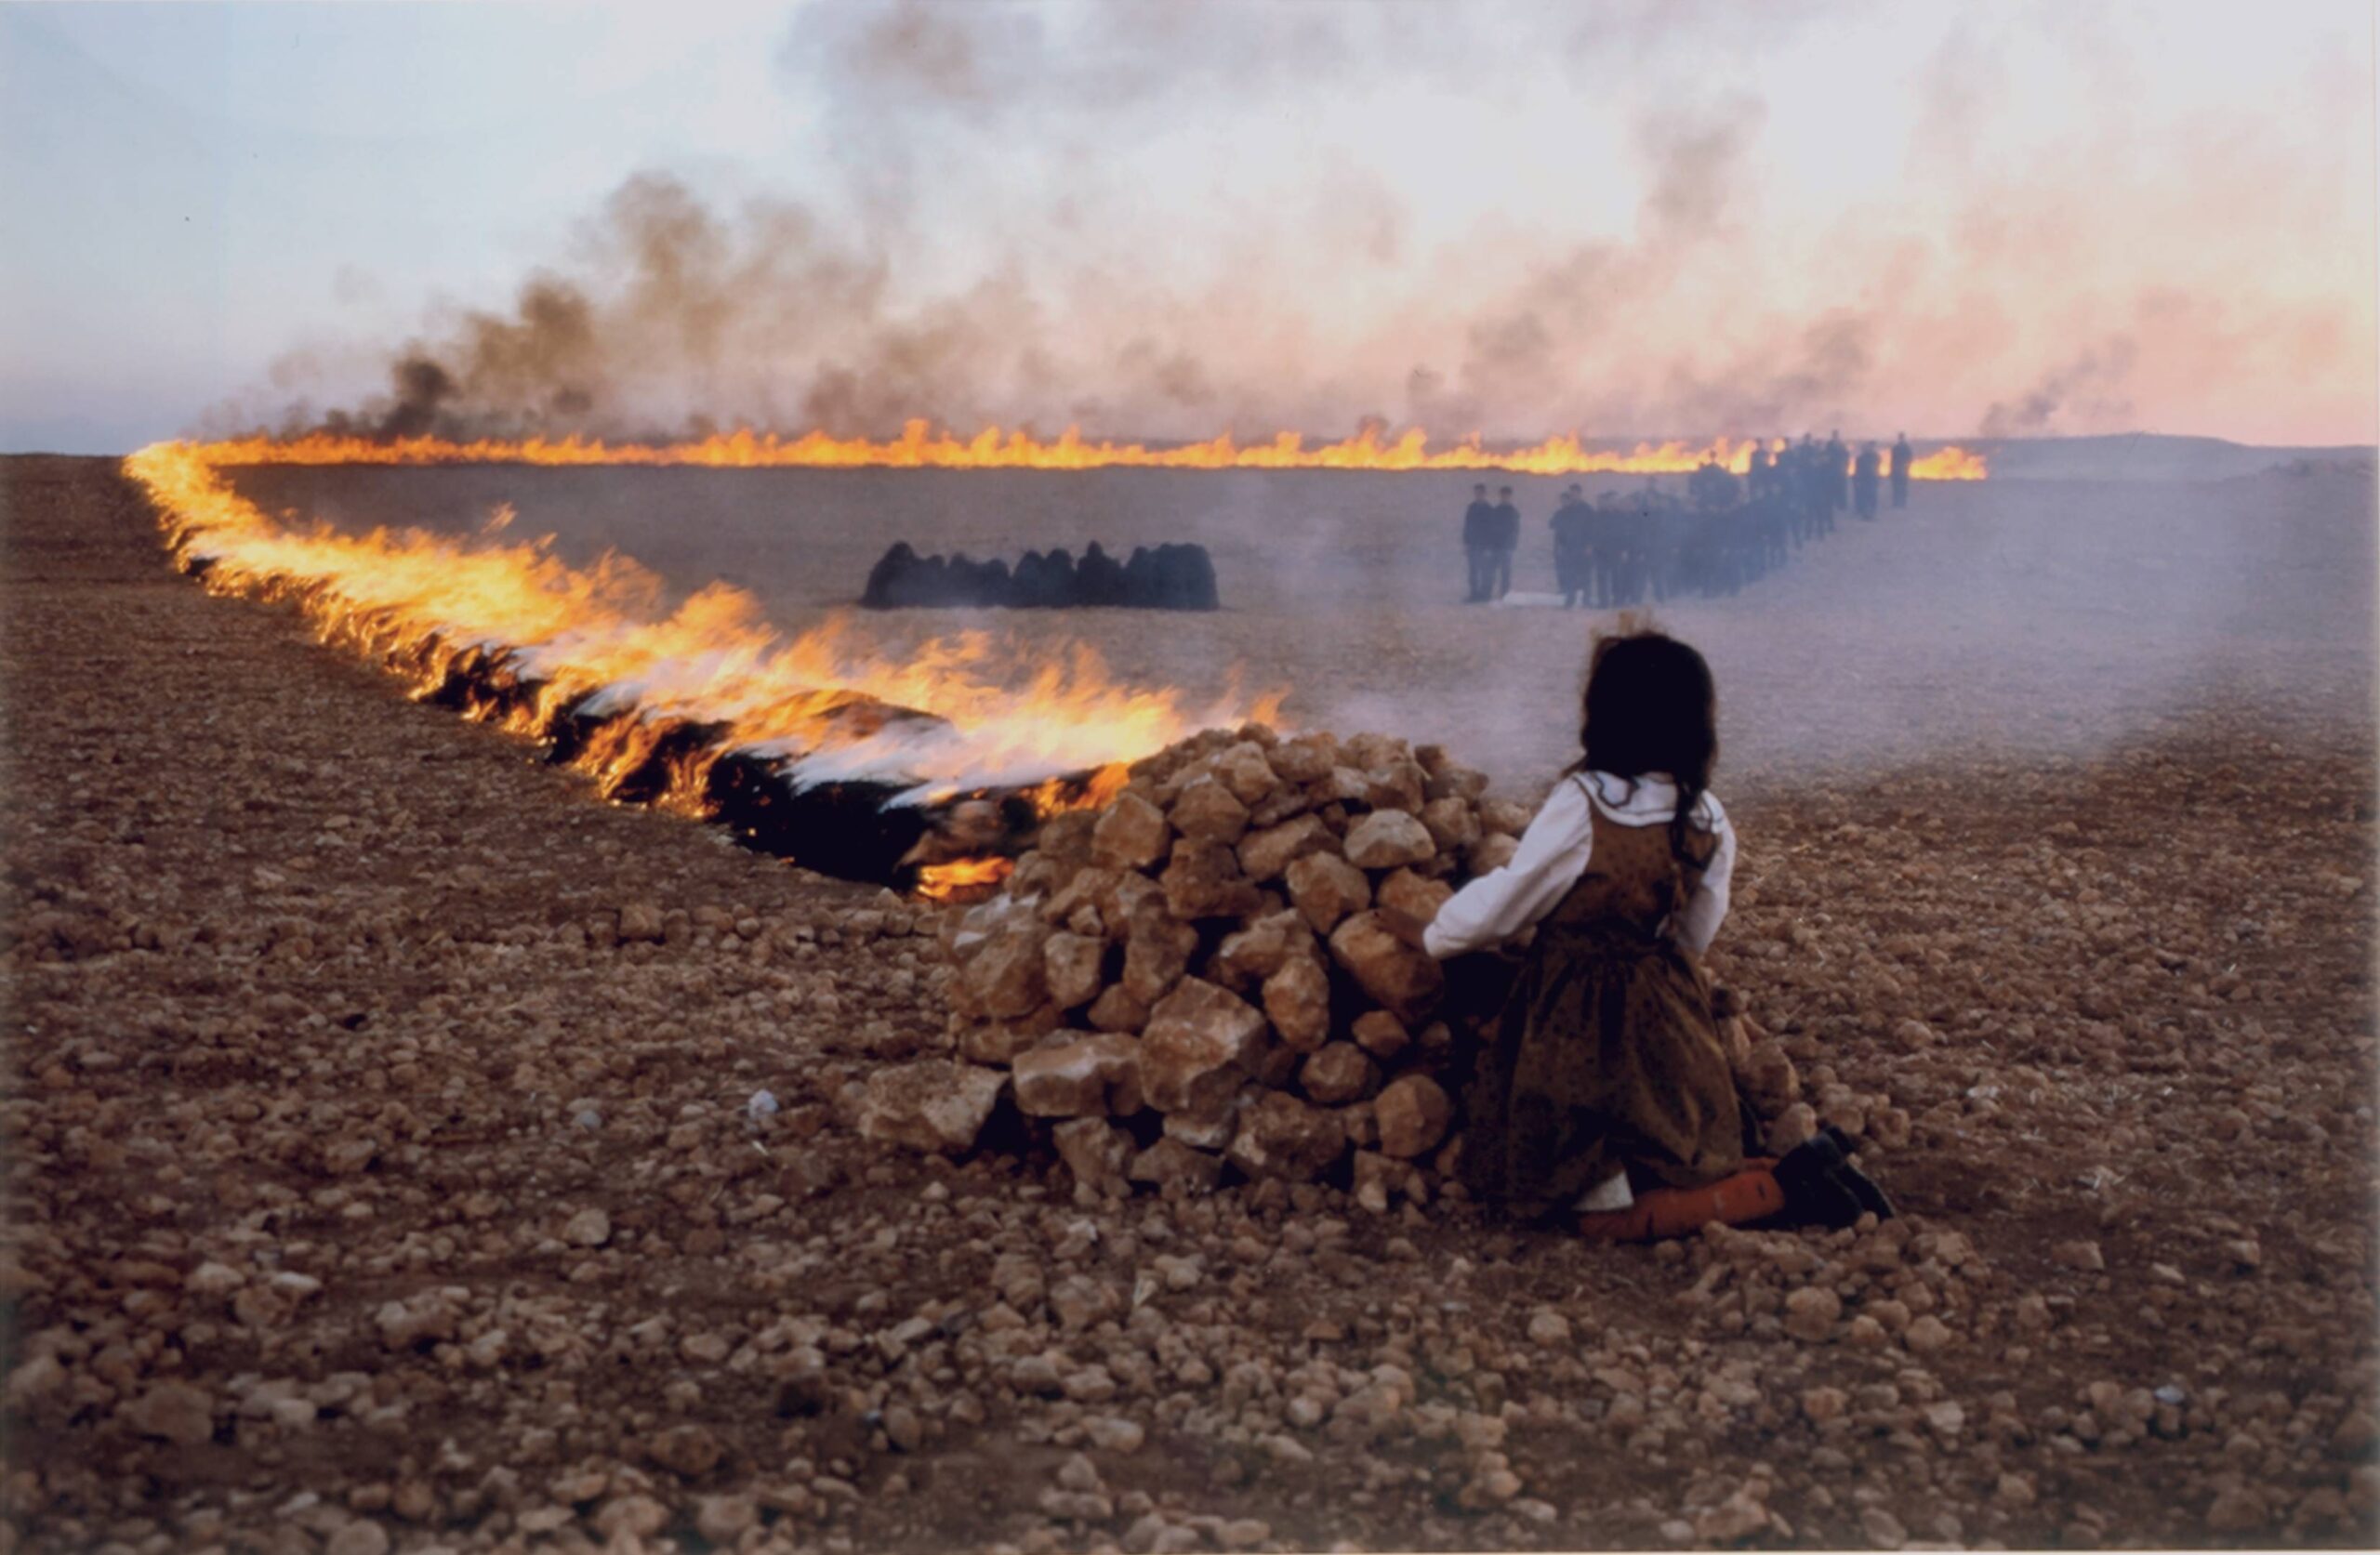 Passage, 2001 - Shirin Neshat